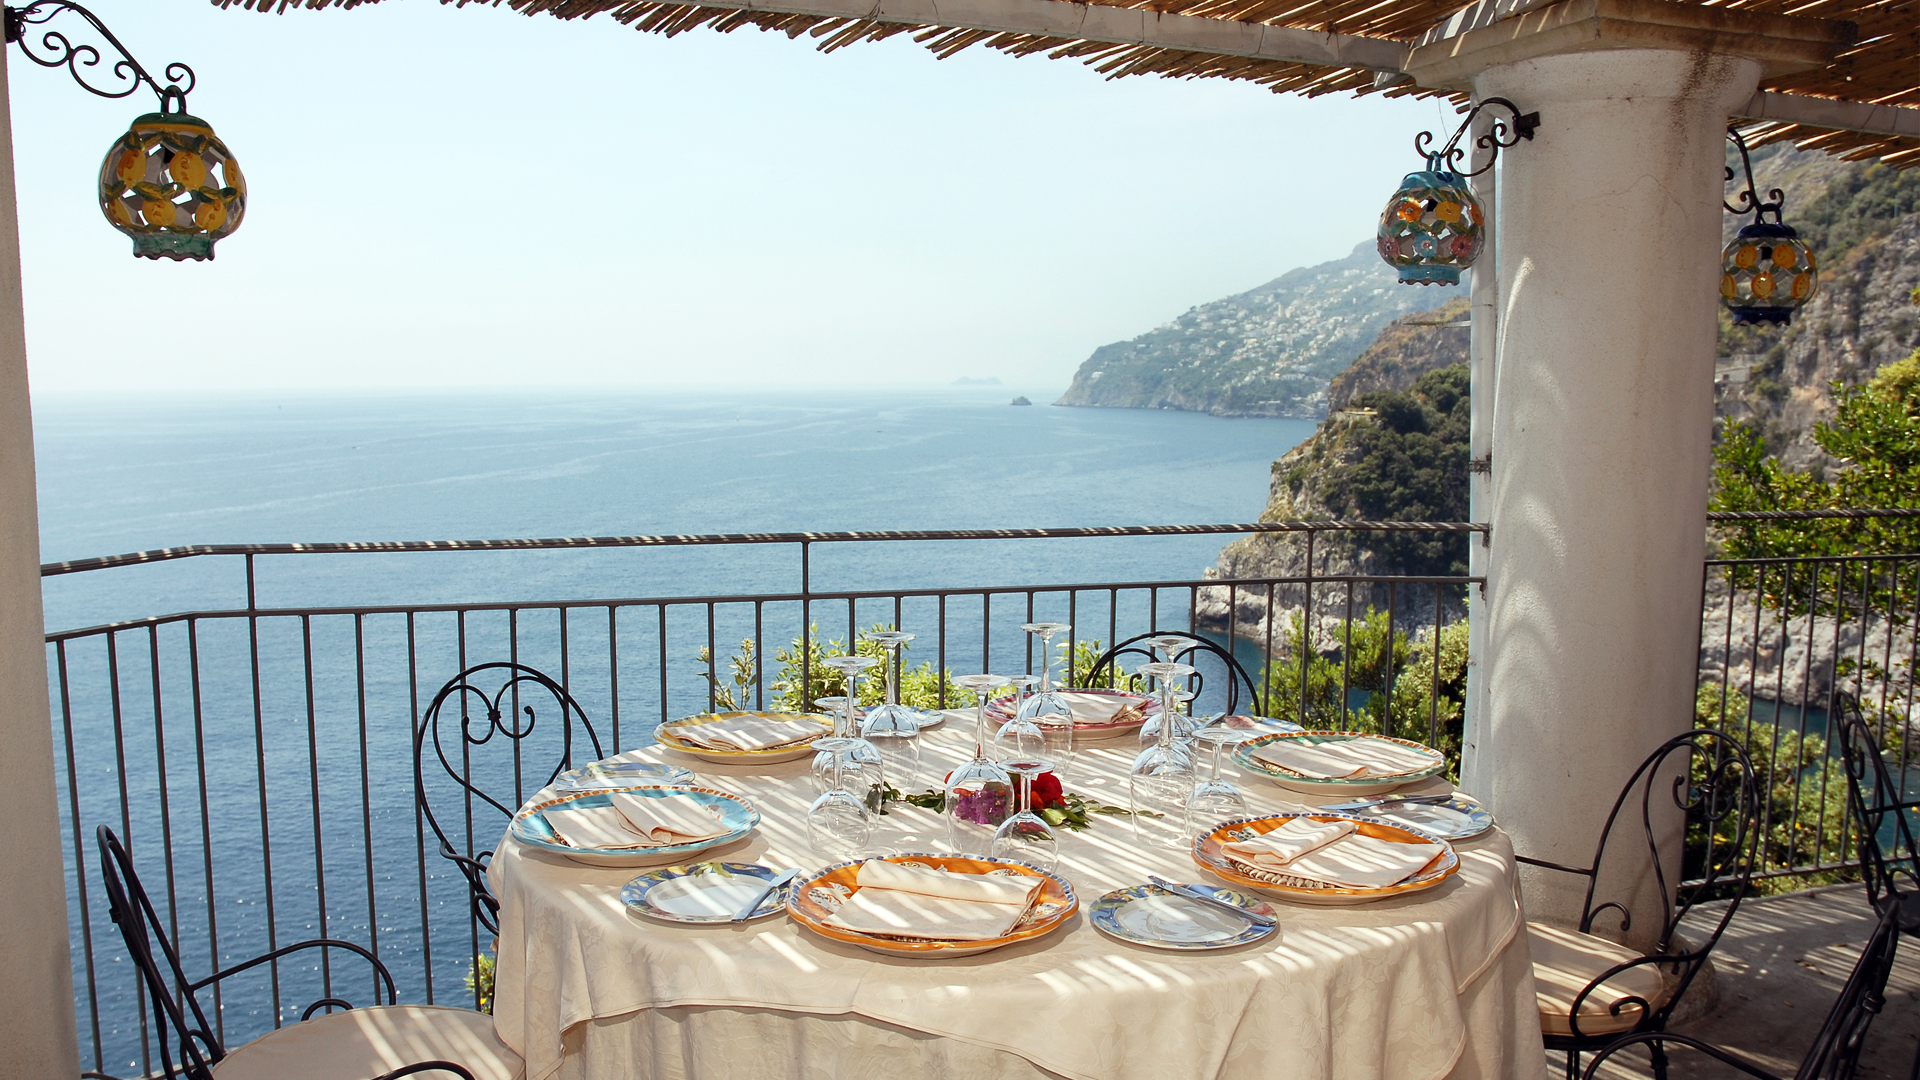 Middag på Hotel La Conca Azzurra - Capri, Italien